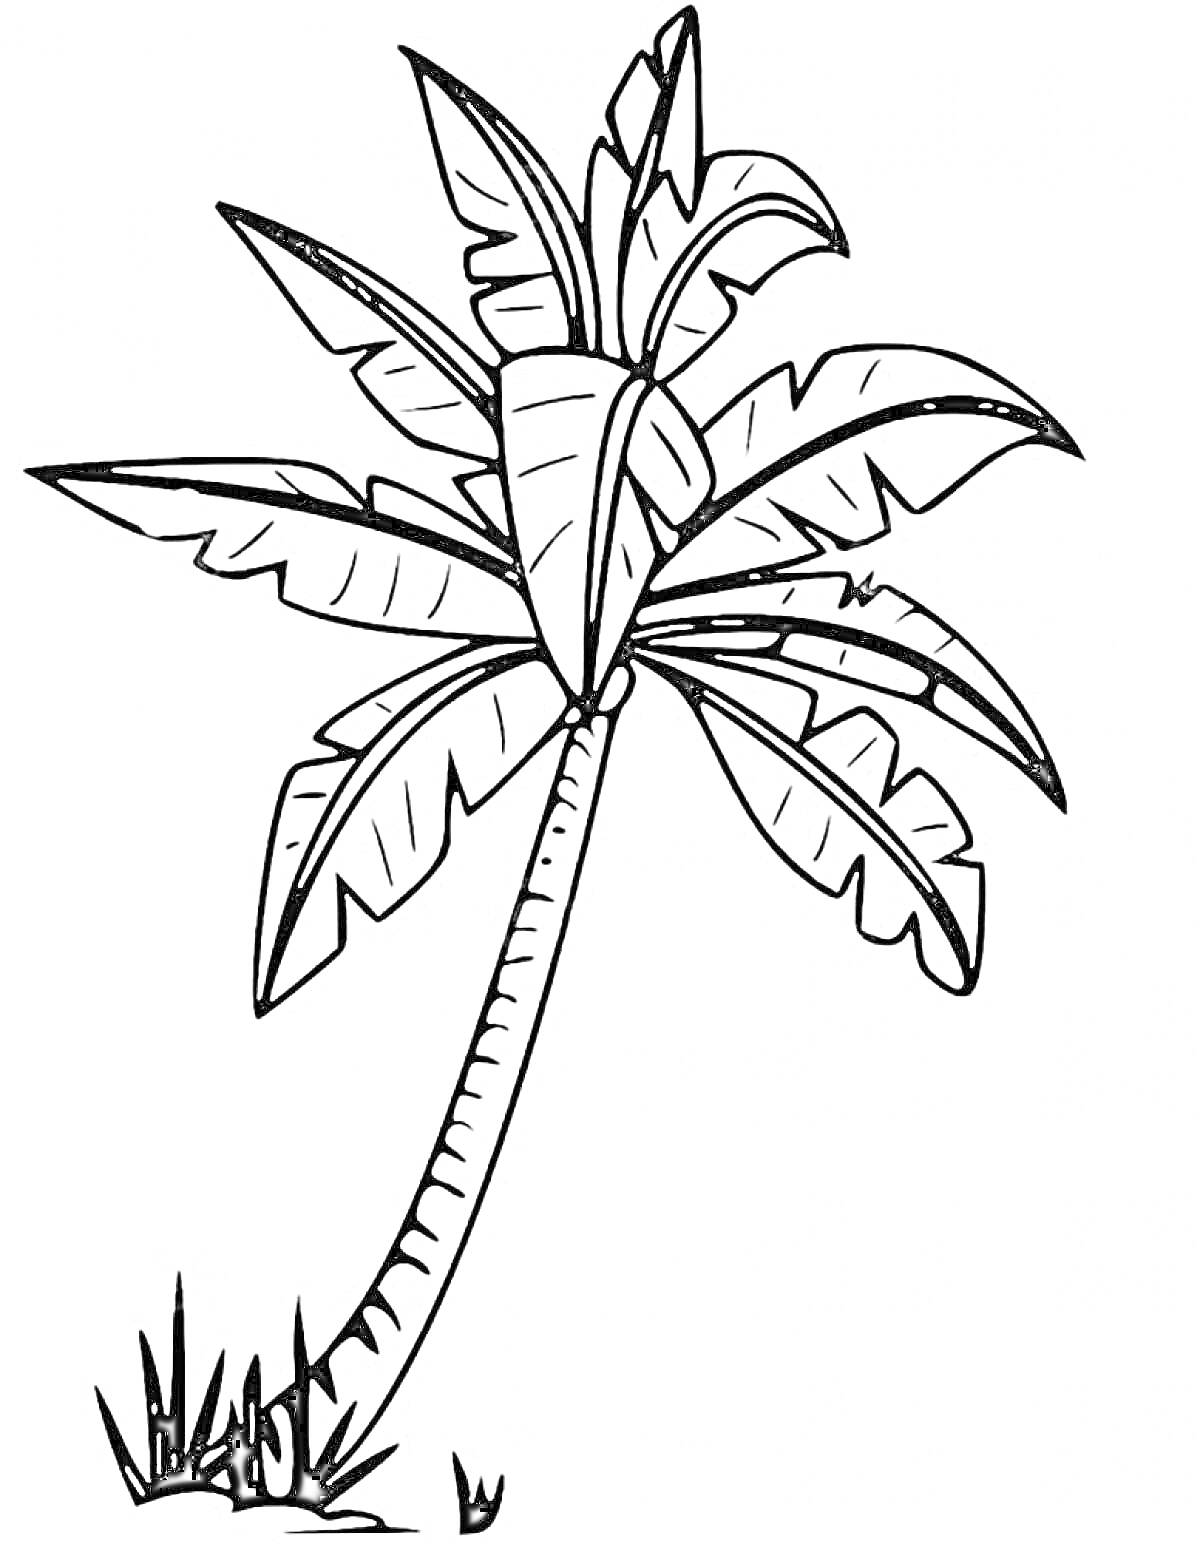 Раскраска Пальма с длинным изогнутым стволом и большим количеством крупных листьев на фоне травы